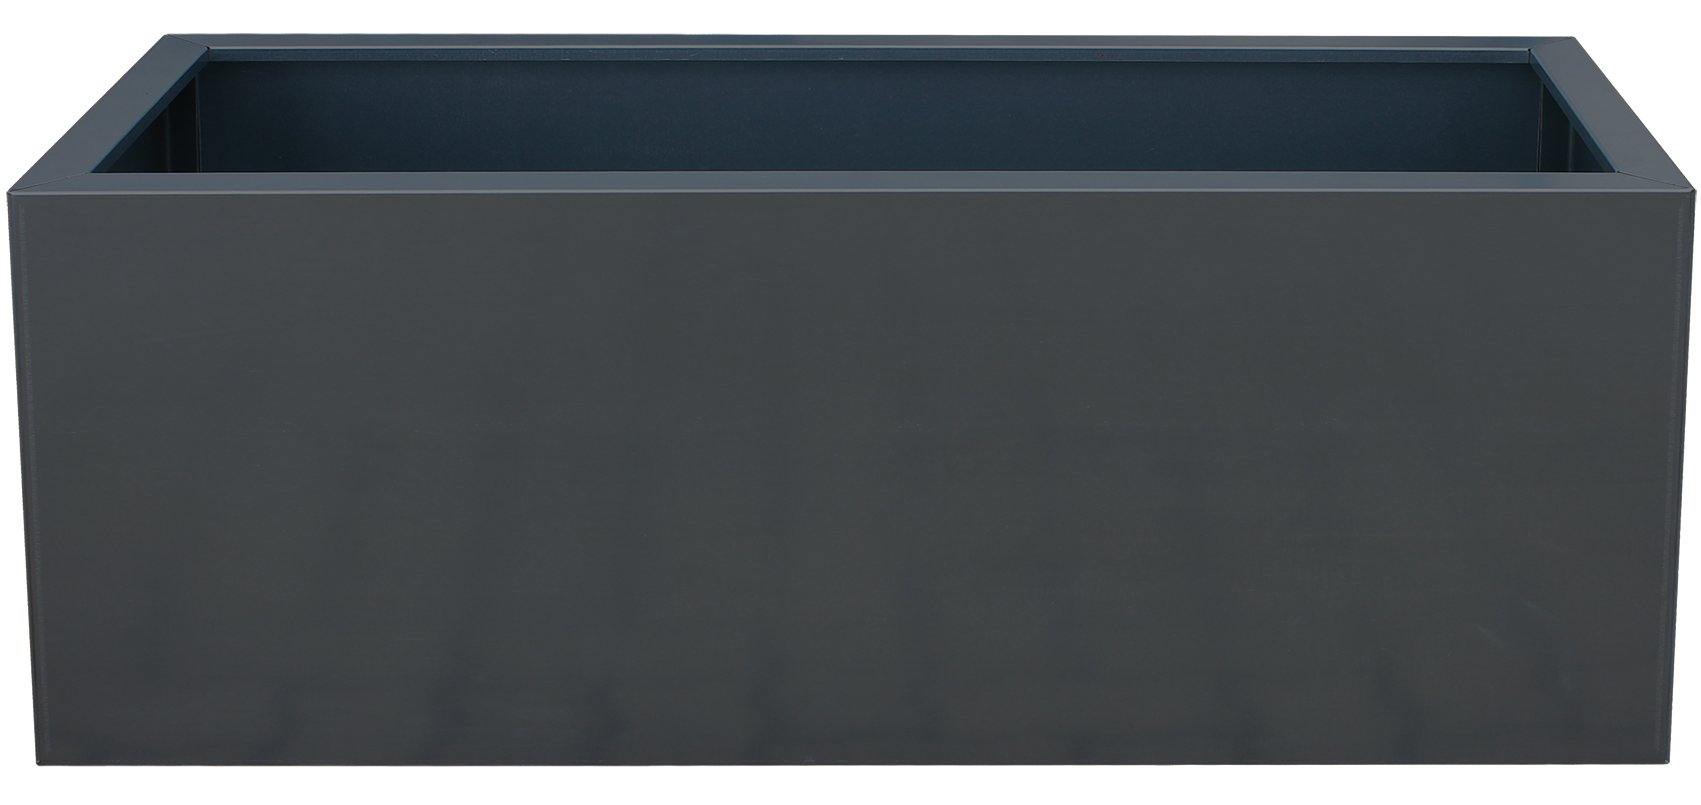 Palatino Exclusive Line Hochbeet/Pflanzkübel Lotte aus verz. Stahl Anthrazit 120 x 40, Tiefe 50 cm, Modular